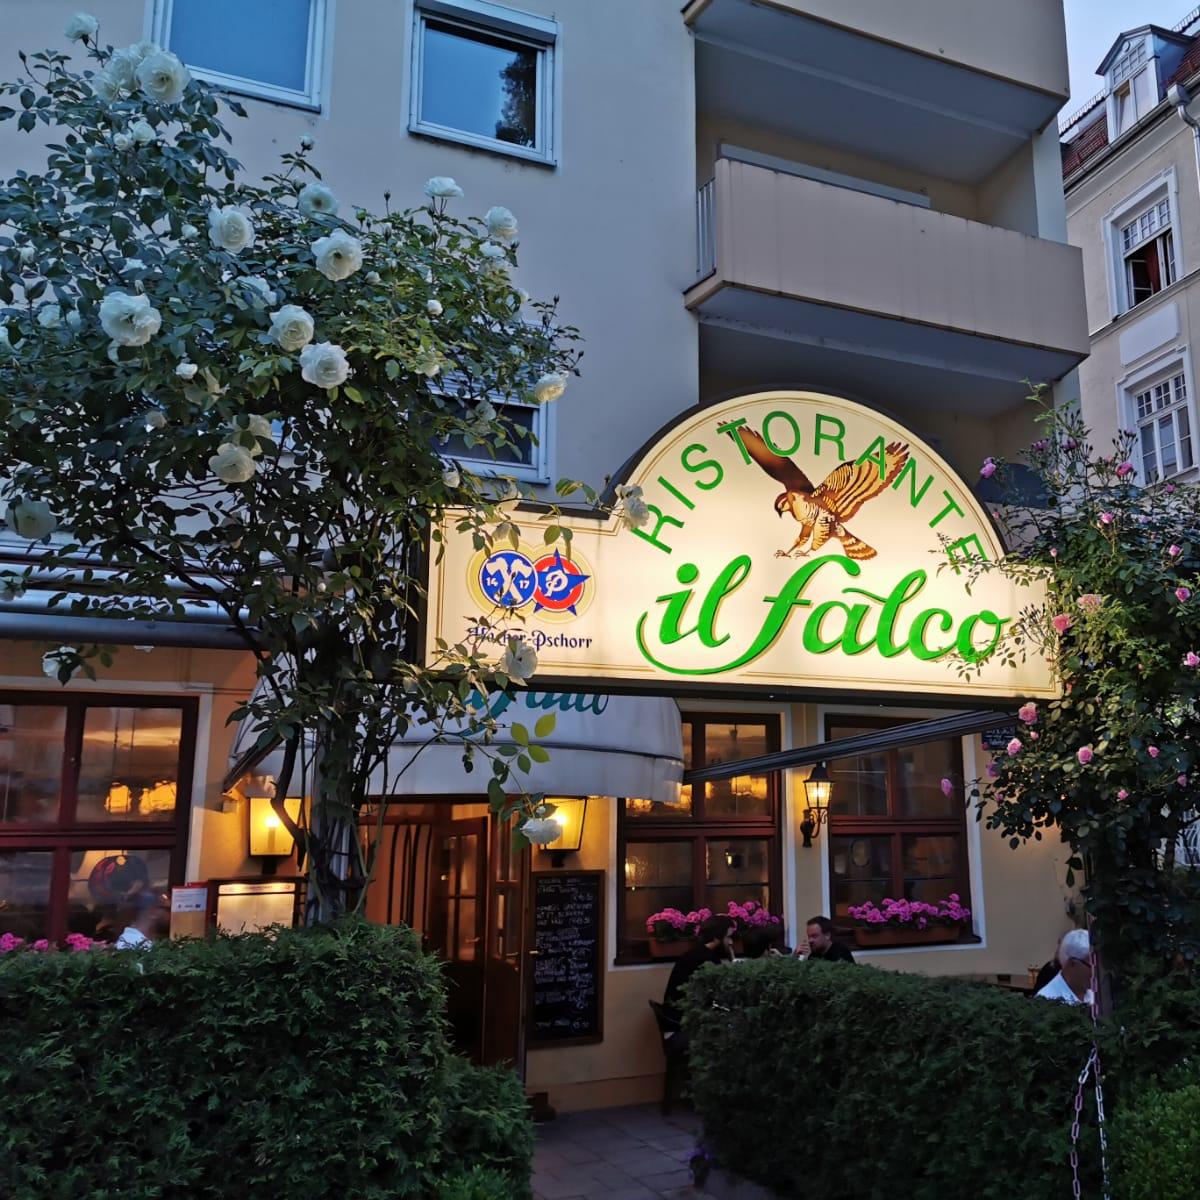 Restaurant "Restaurant il falco" in München